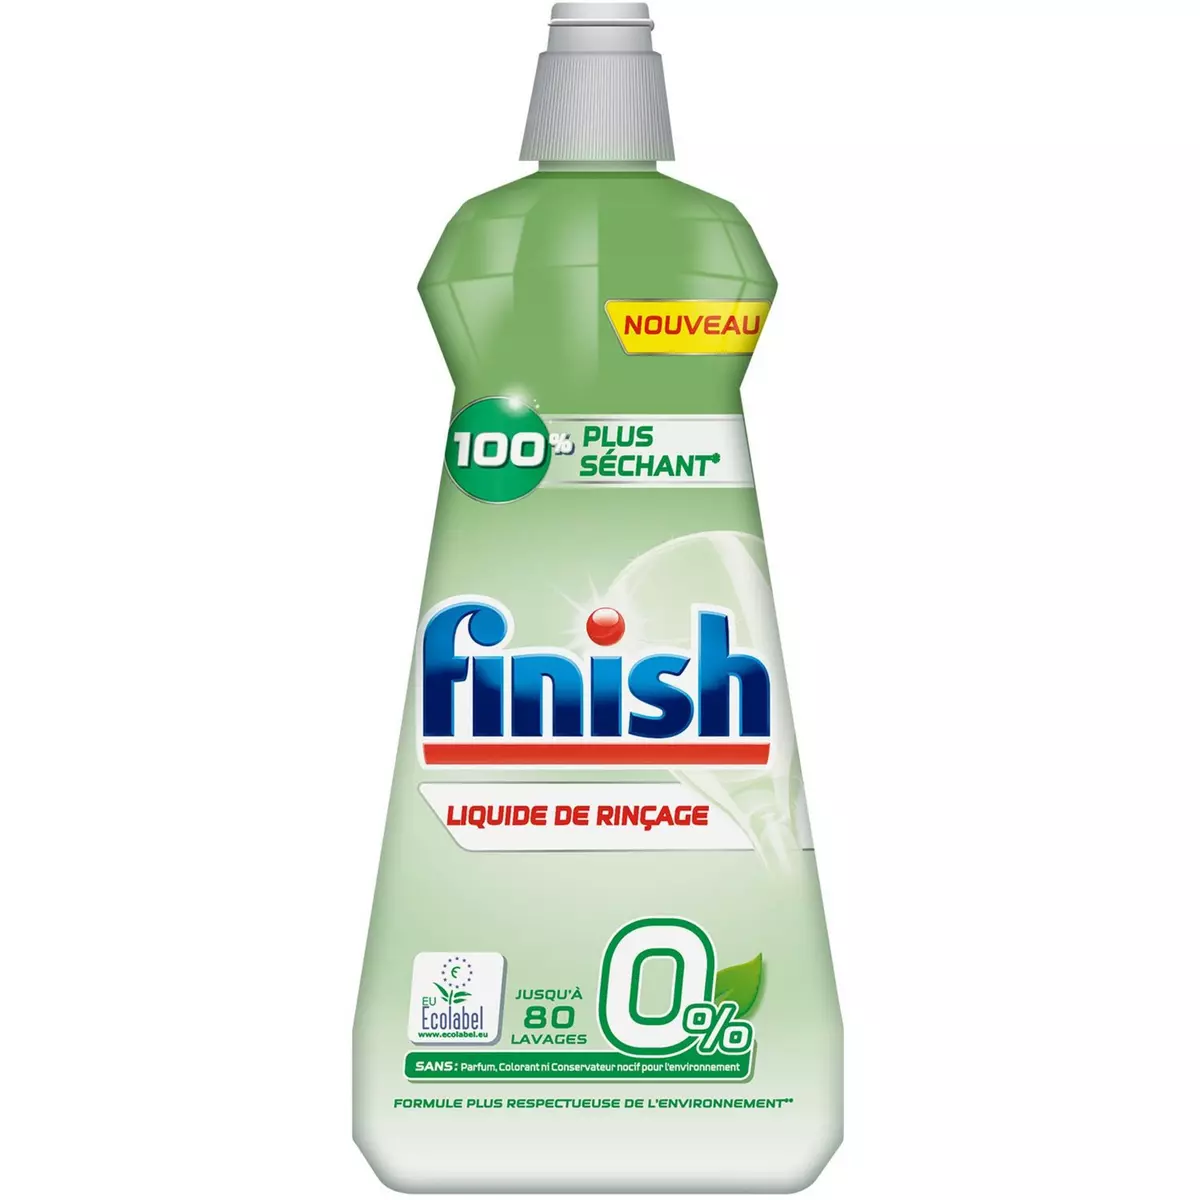 FINISH Liquide de rinçage 0% lave-vaisselle 100% plus séchant 400ml